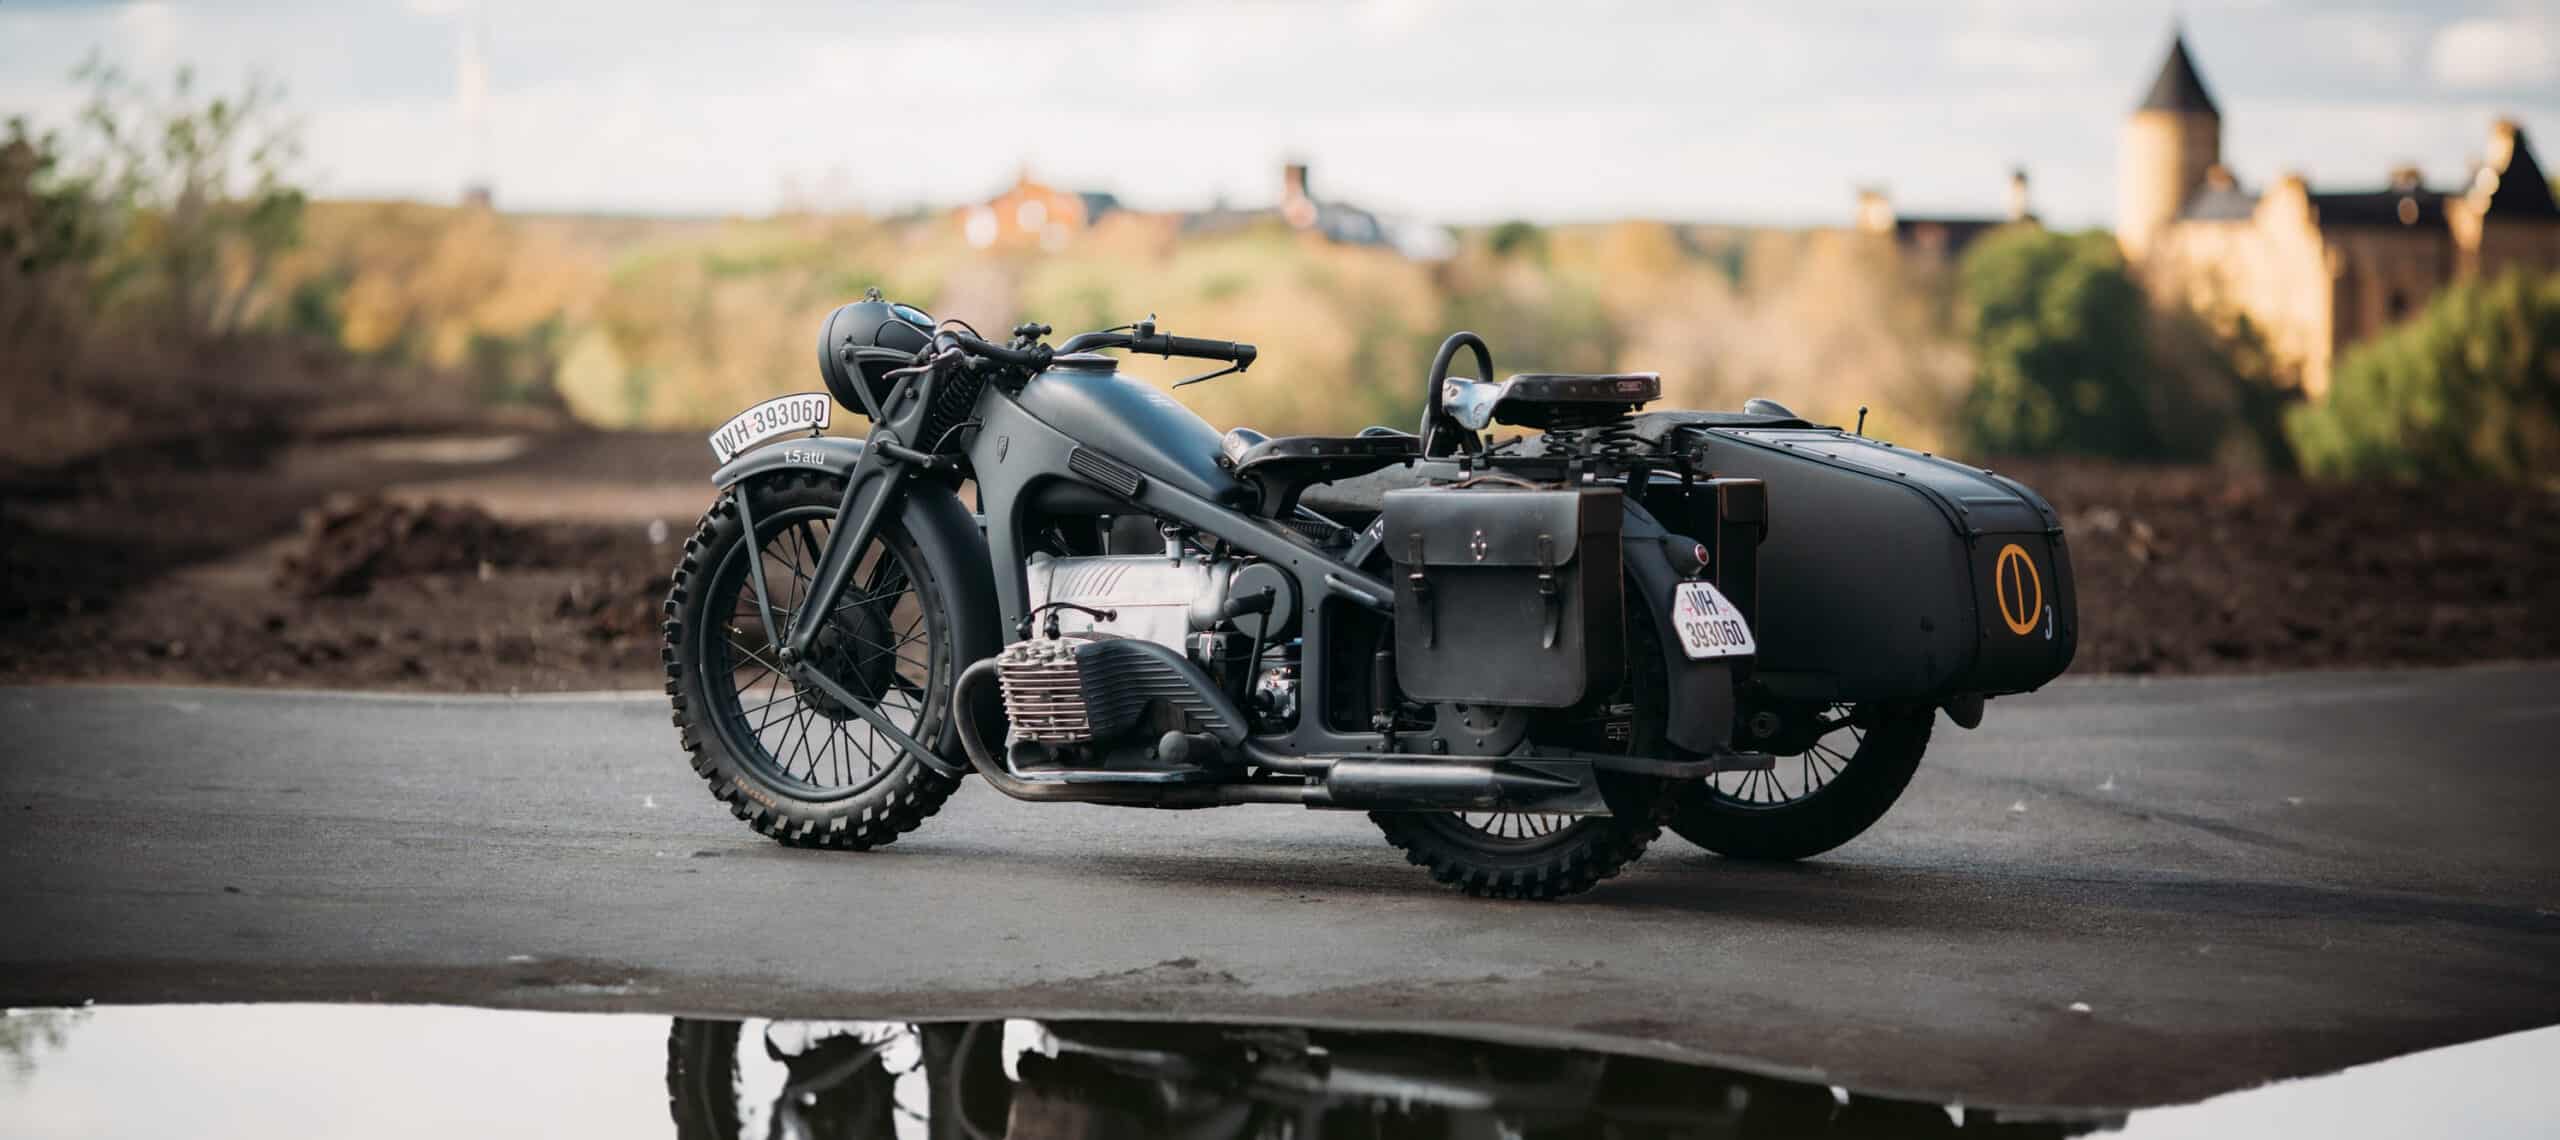 Zundapp K 800-W. Motocykl z II wojny światowej, czterocylindrowy